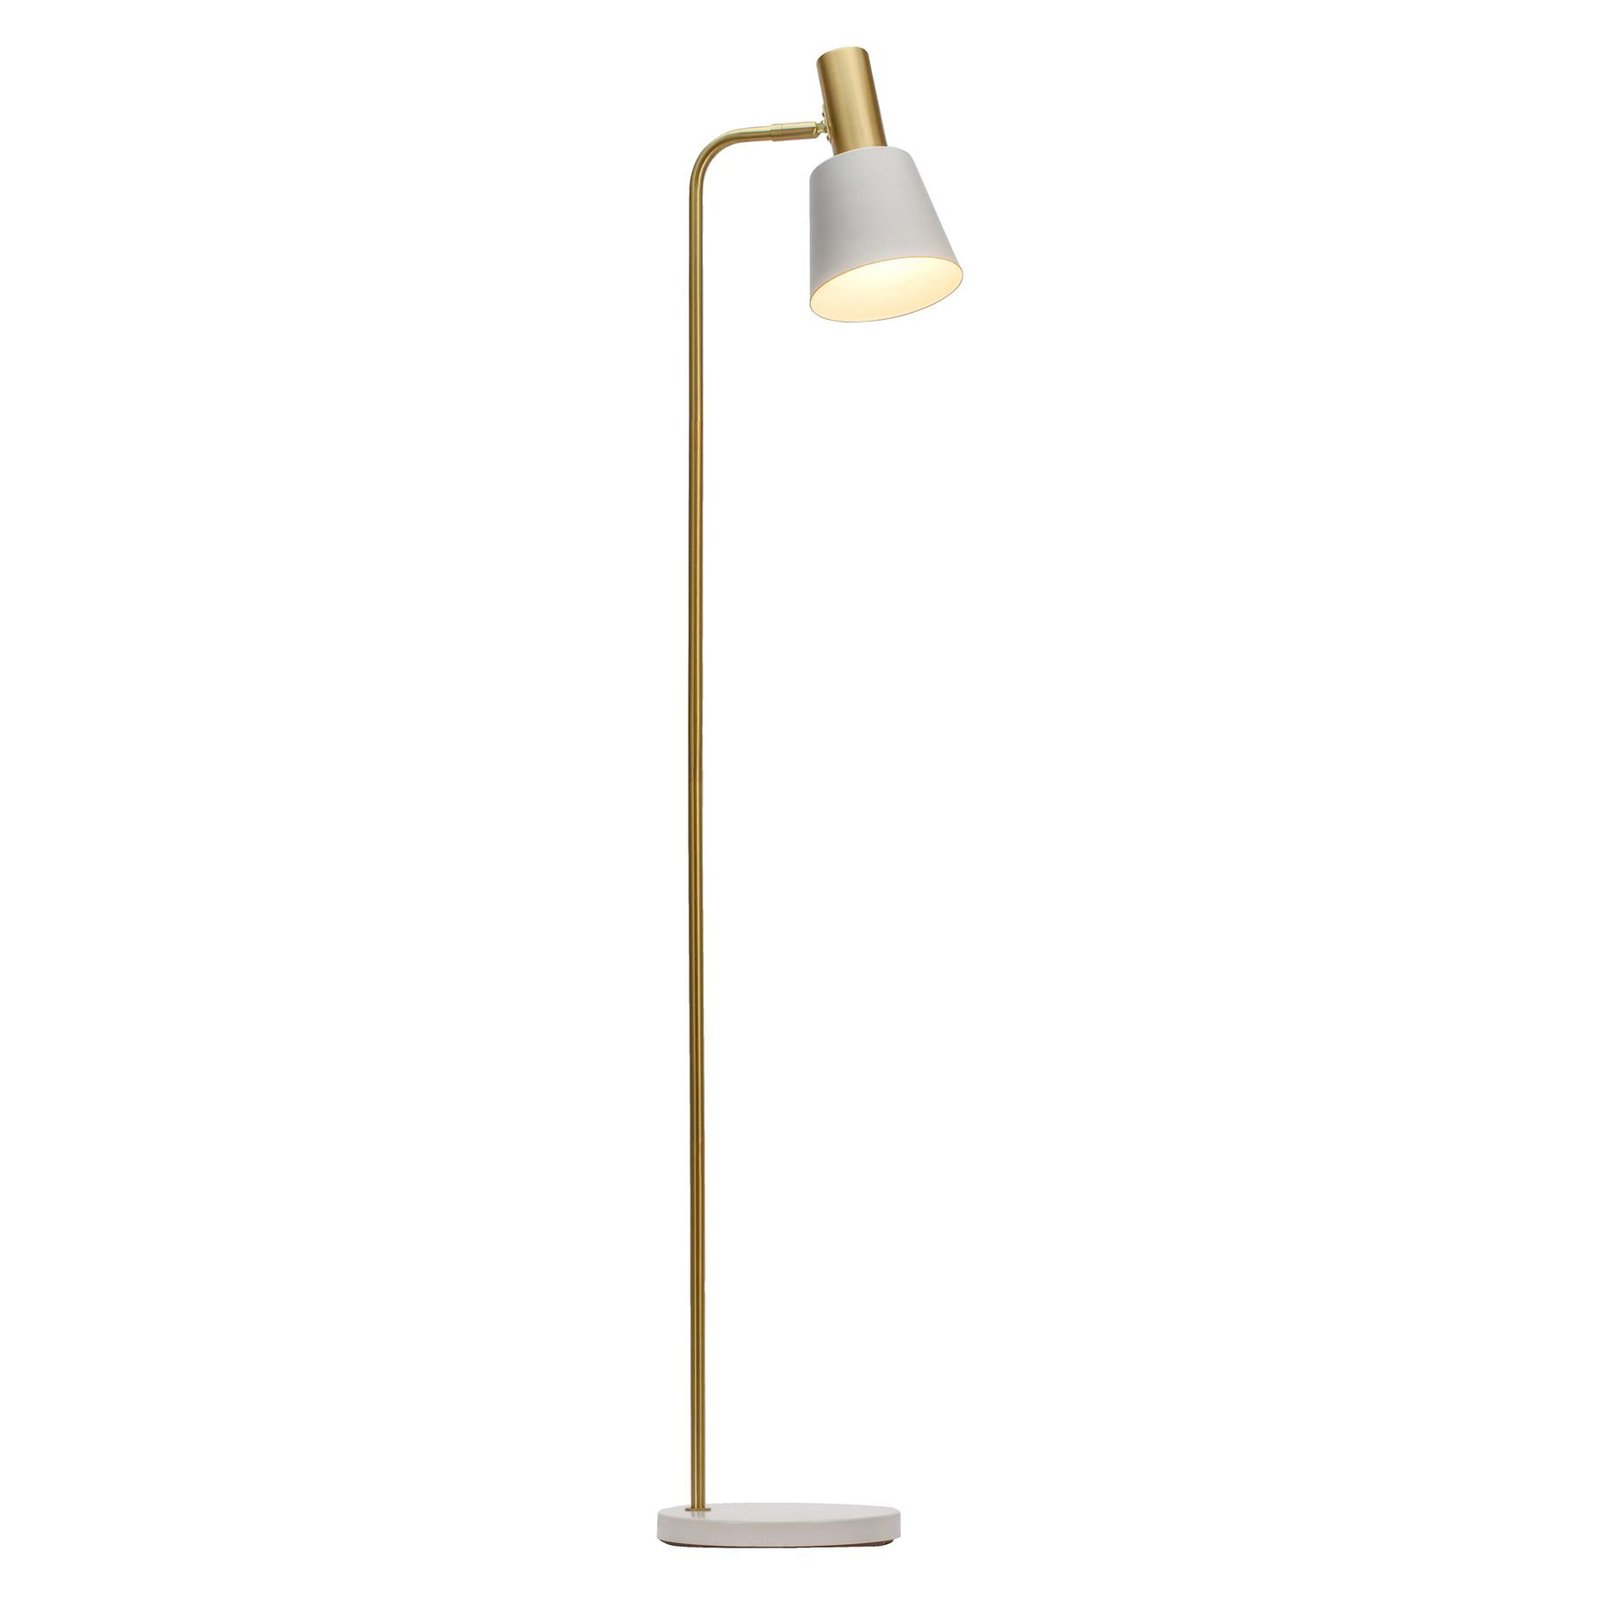 Pauleen Grand Elegance floor lamp, white